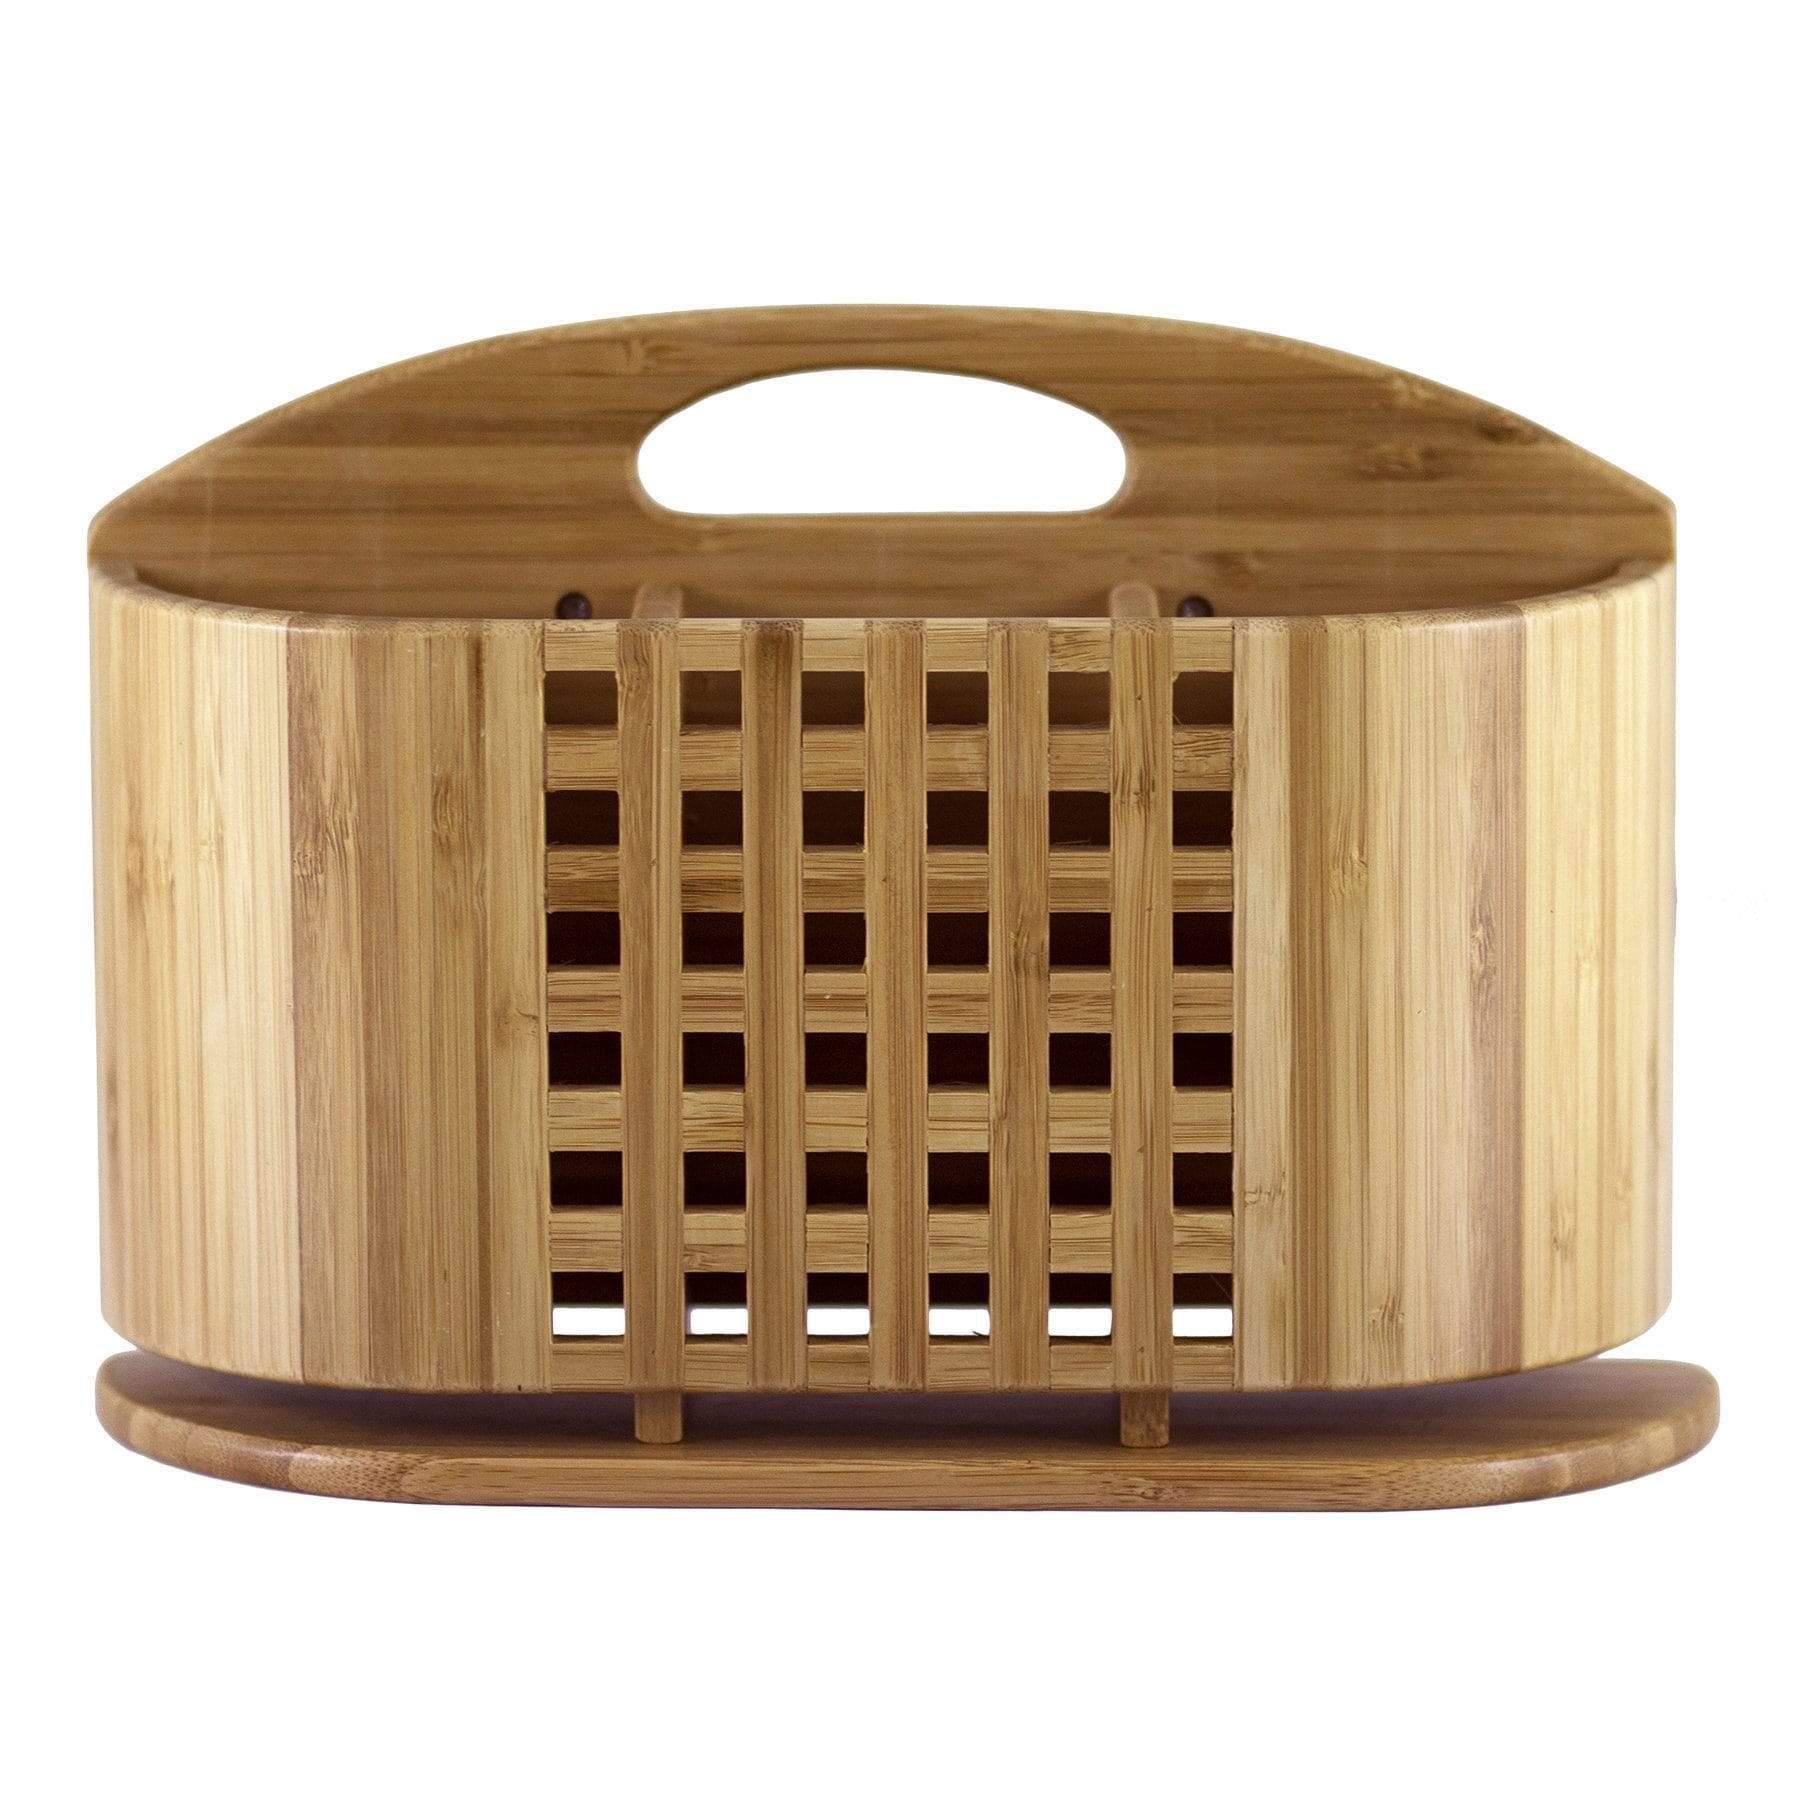 https://totallybamboo.com/cdn/shop/products/eco-dish-rack-utensil-holder-totally-bamboo-598926.jpg?v=1627673854